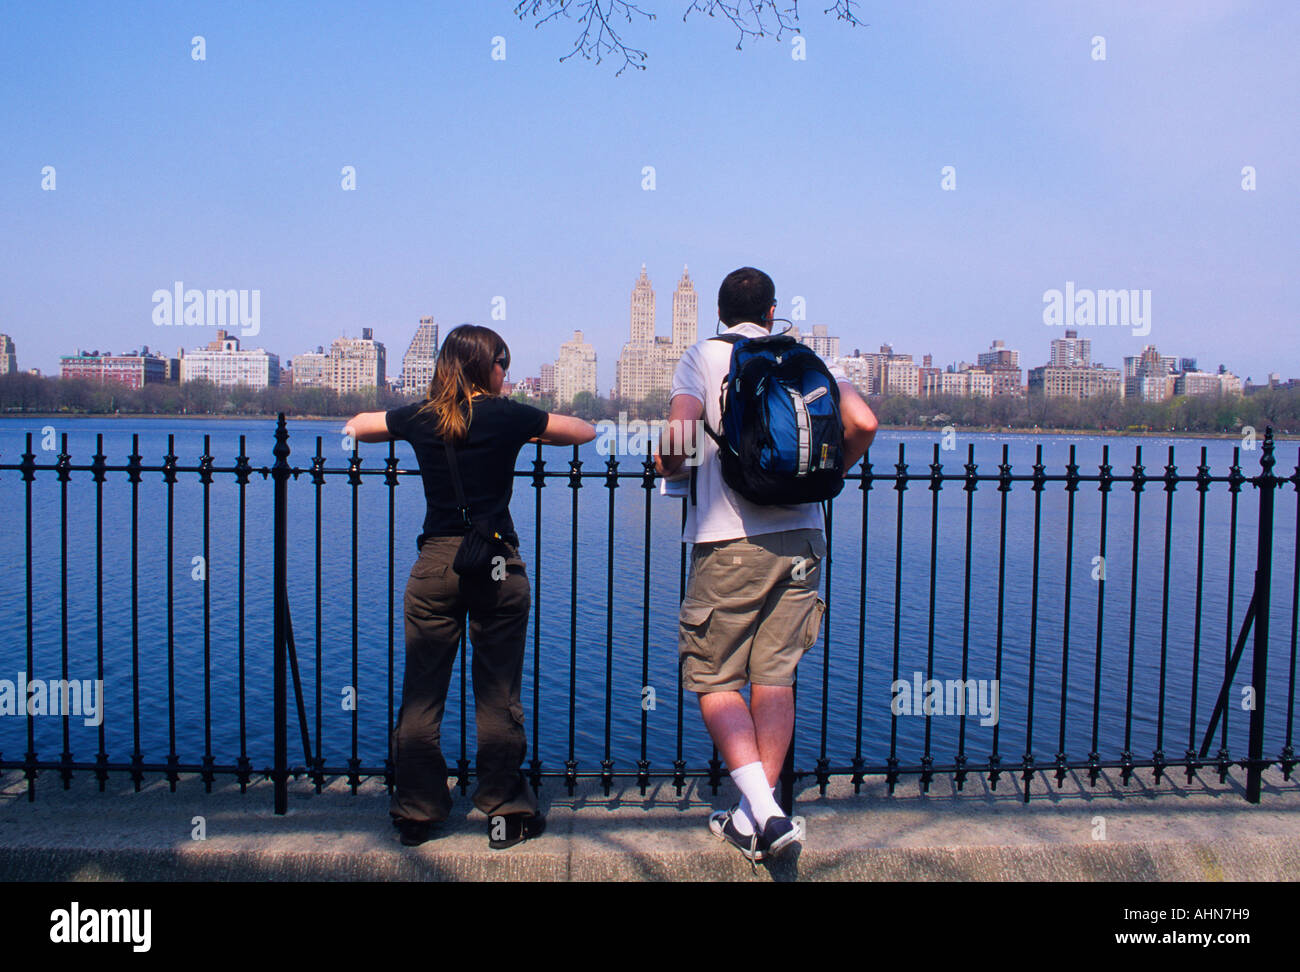 Réservoir de New York City Central Park. Un jeune garçon et une jeune fille regardant une clôture au réservoir. ÉTATS-UNIS Banque D'Images